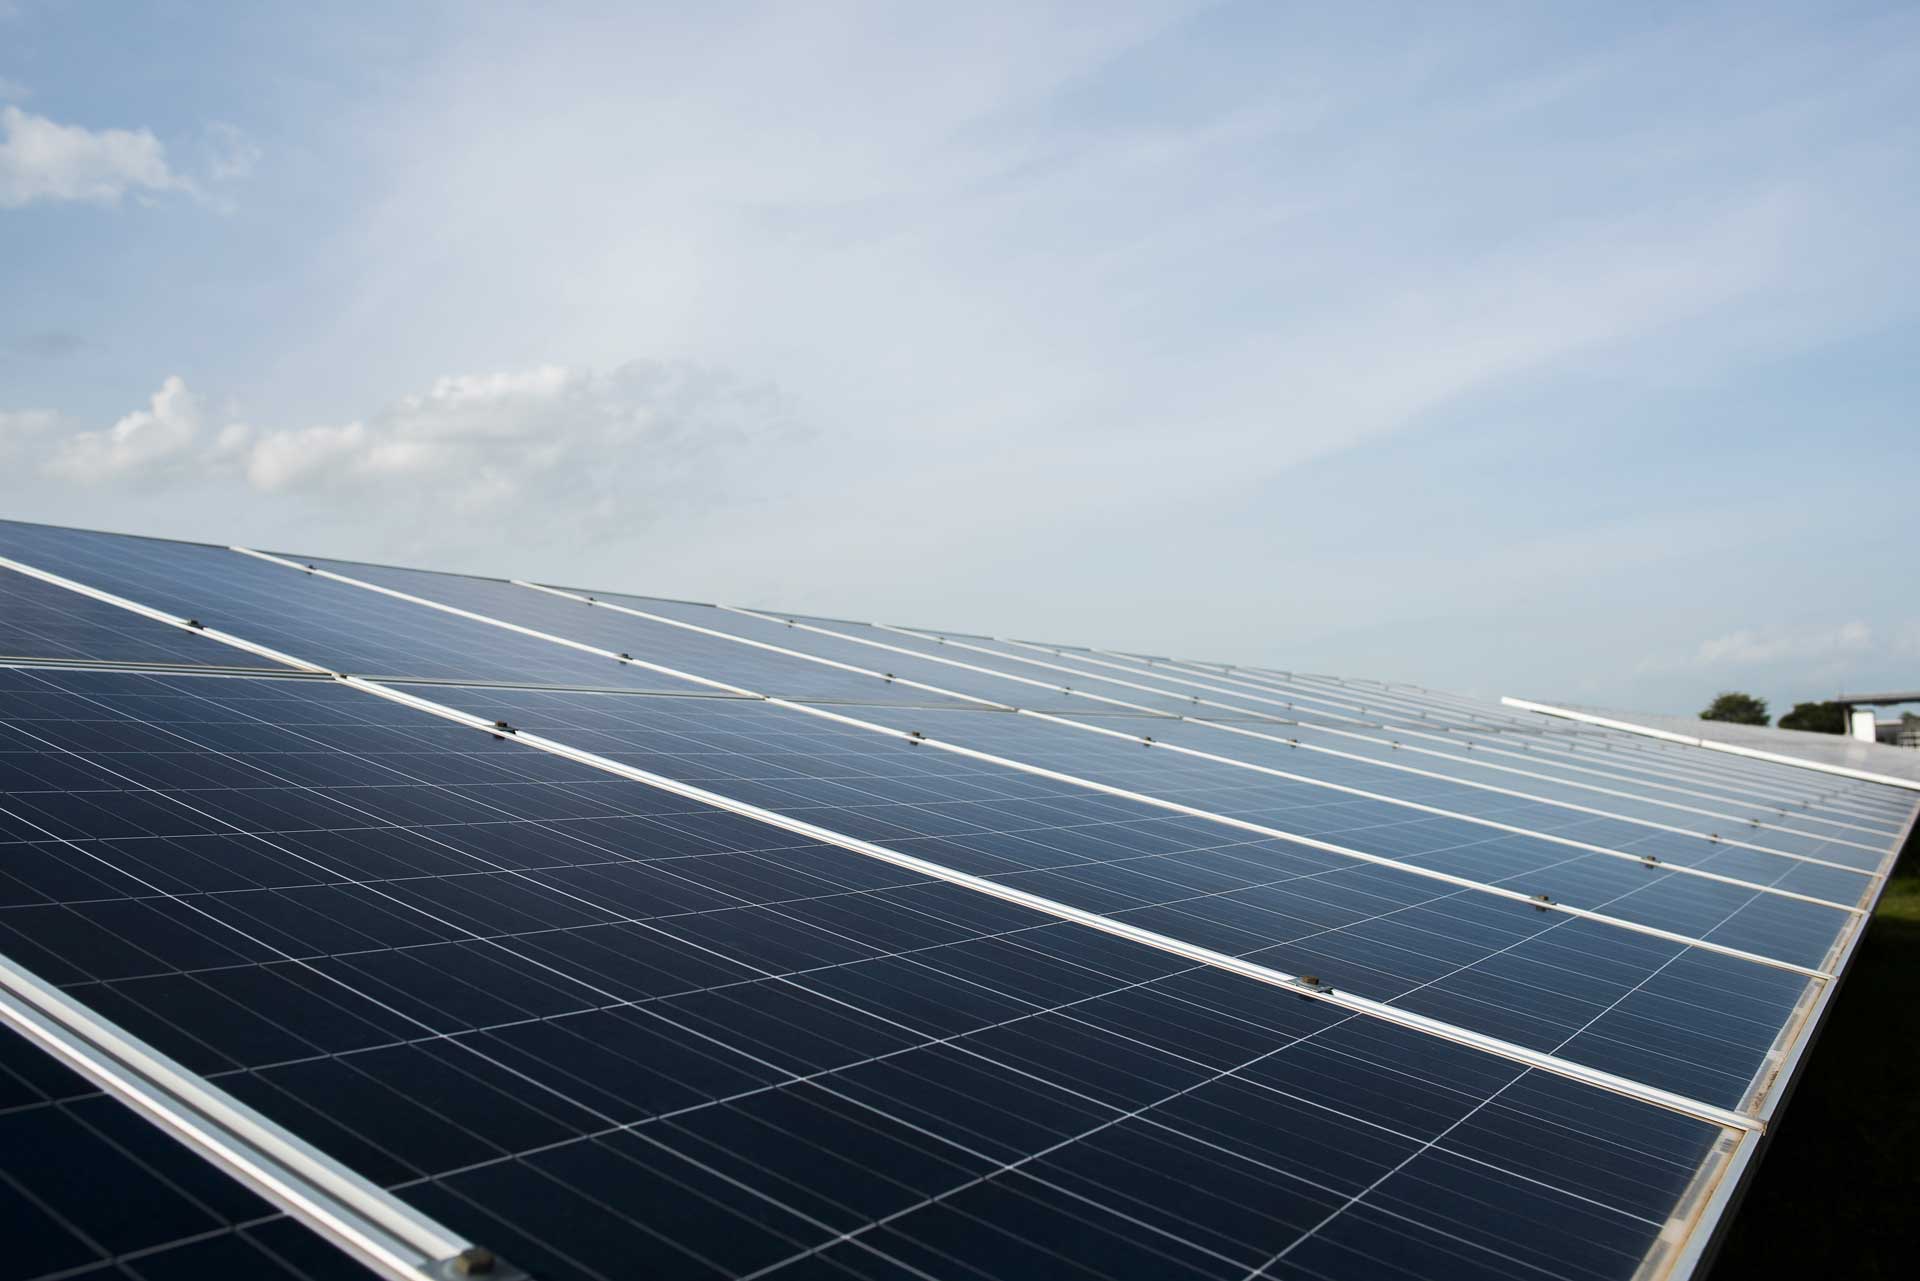 Anyenergia S.r.l. impianto fotovoltaico a tetto per la produzione di energia pulita nella Valdinievole a Massa e Cozzile (PT)